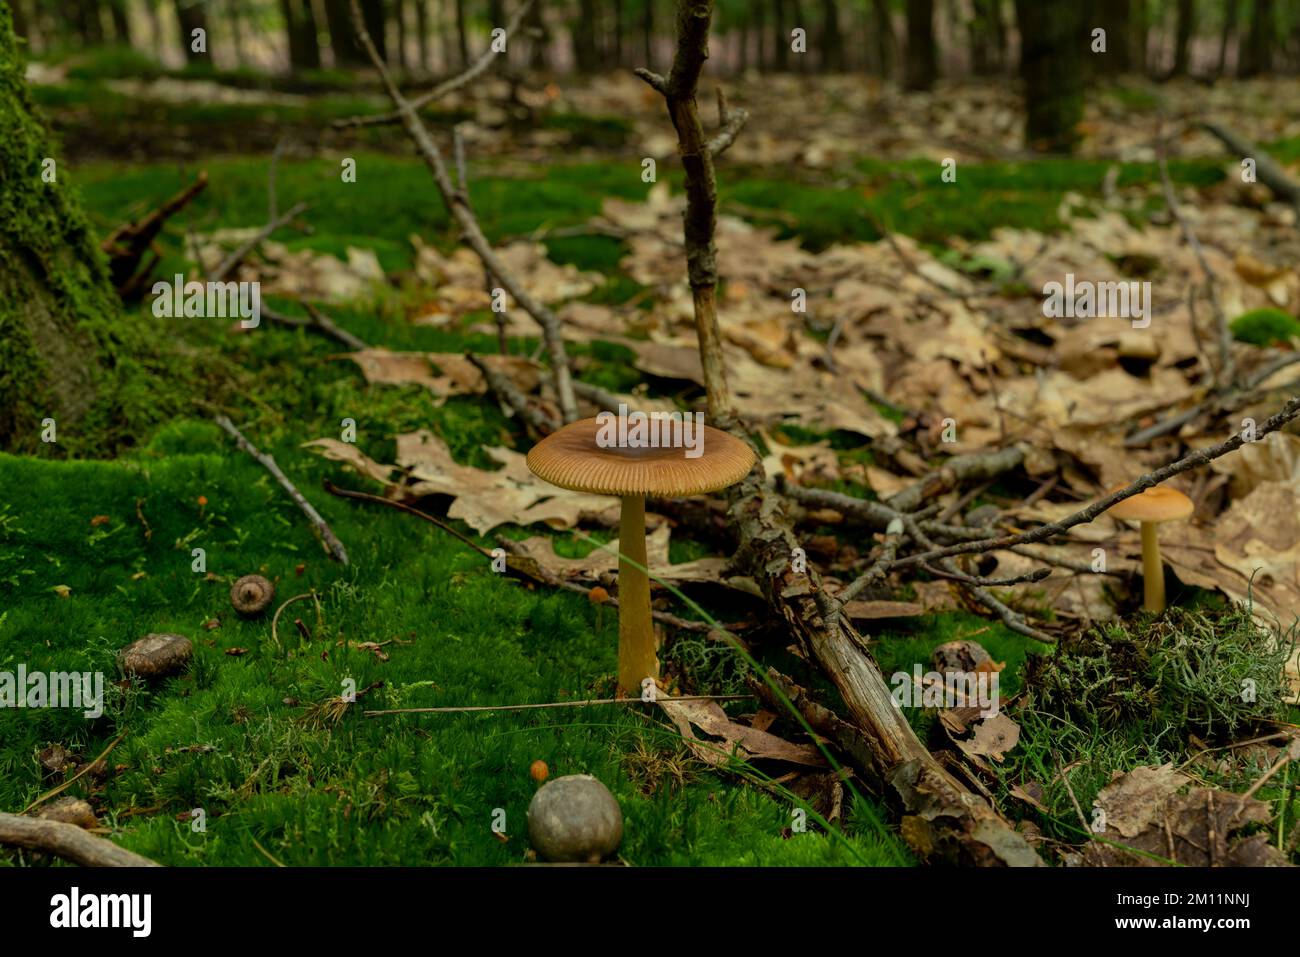 Champignon toxique, petit champignon toxique brun dans la forêt, cultivé sur des mousses Banque D'Images